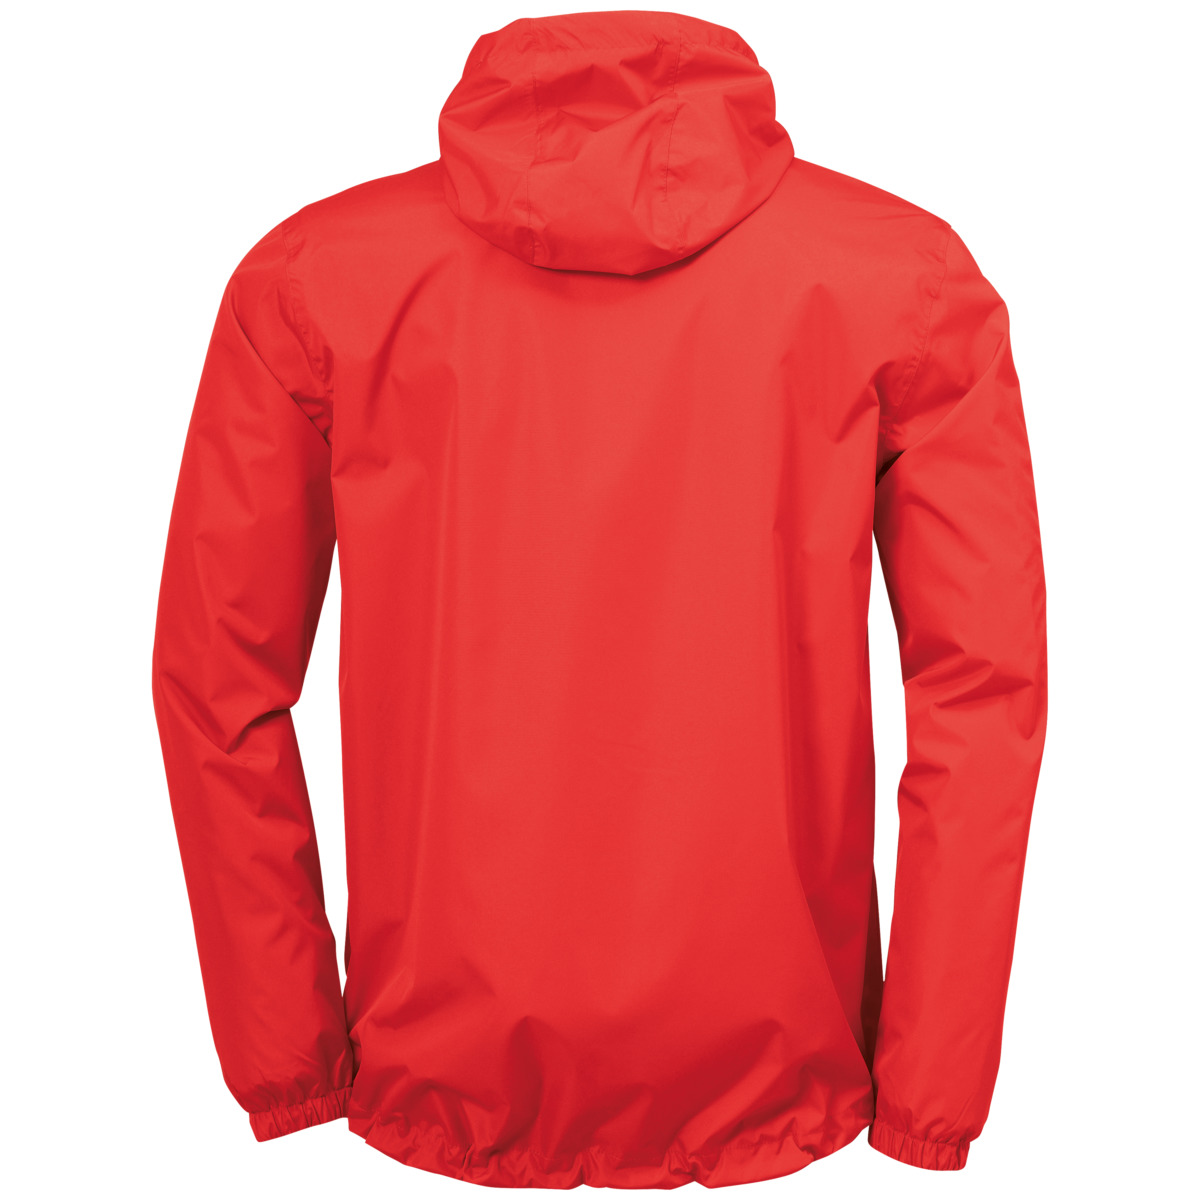 uhlsport jackets & rain jackets | uhlsport shop